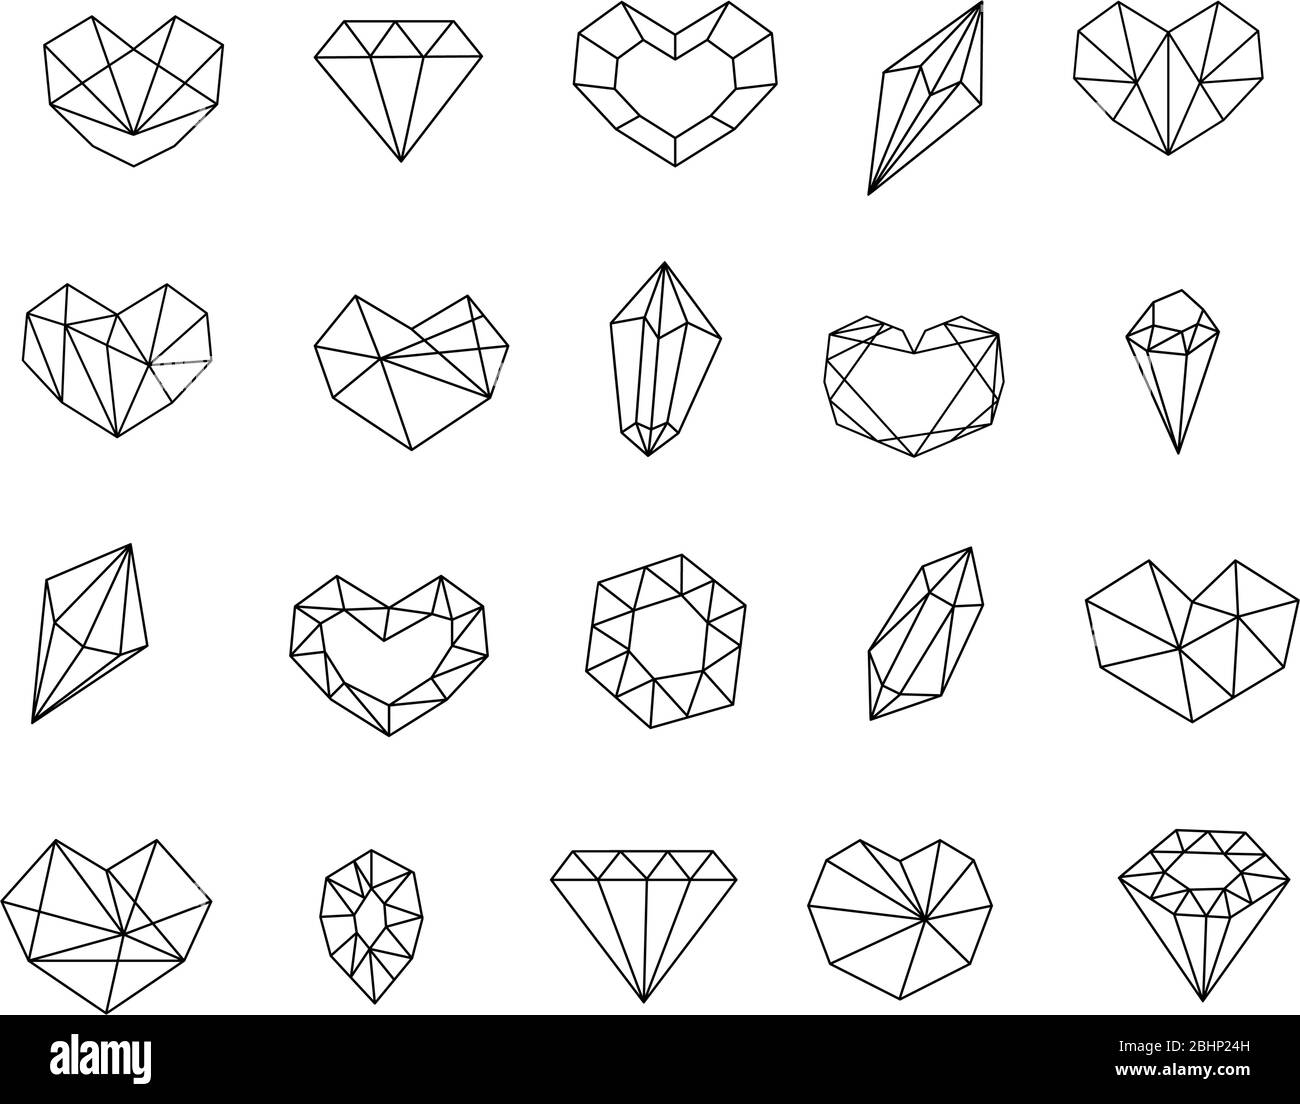 Pietra di gemma cristallo icona set linea di monoline art. Doodle diamanti raccolta per web design, illustrazione del libro Illustrazione Vettoriale